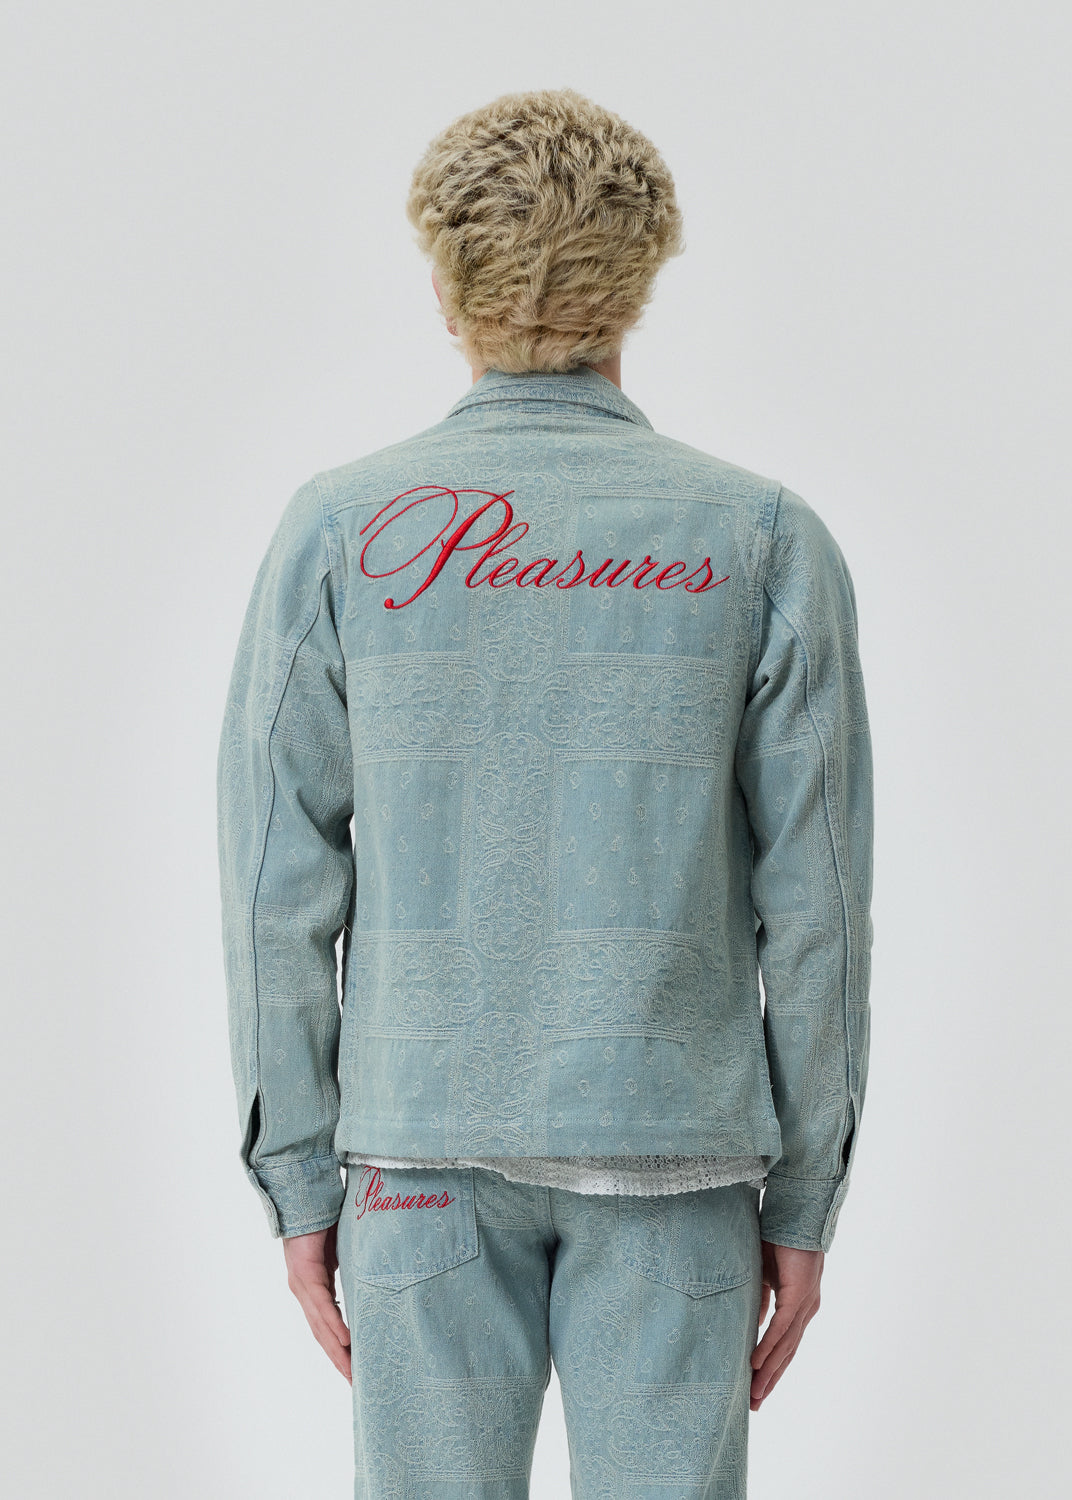 Pleasures - Blue Merit Denim Work Jacket | 1032 SPACE